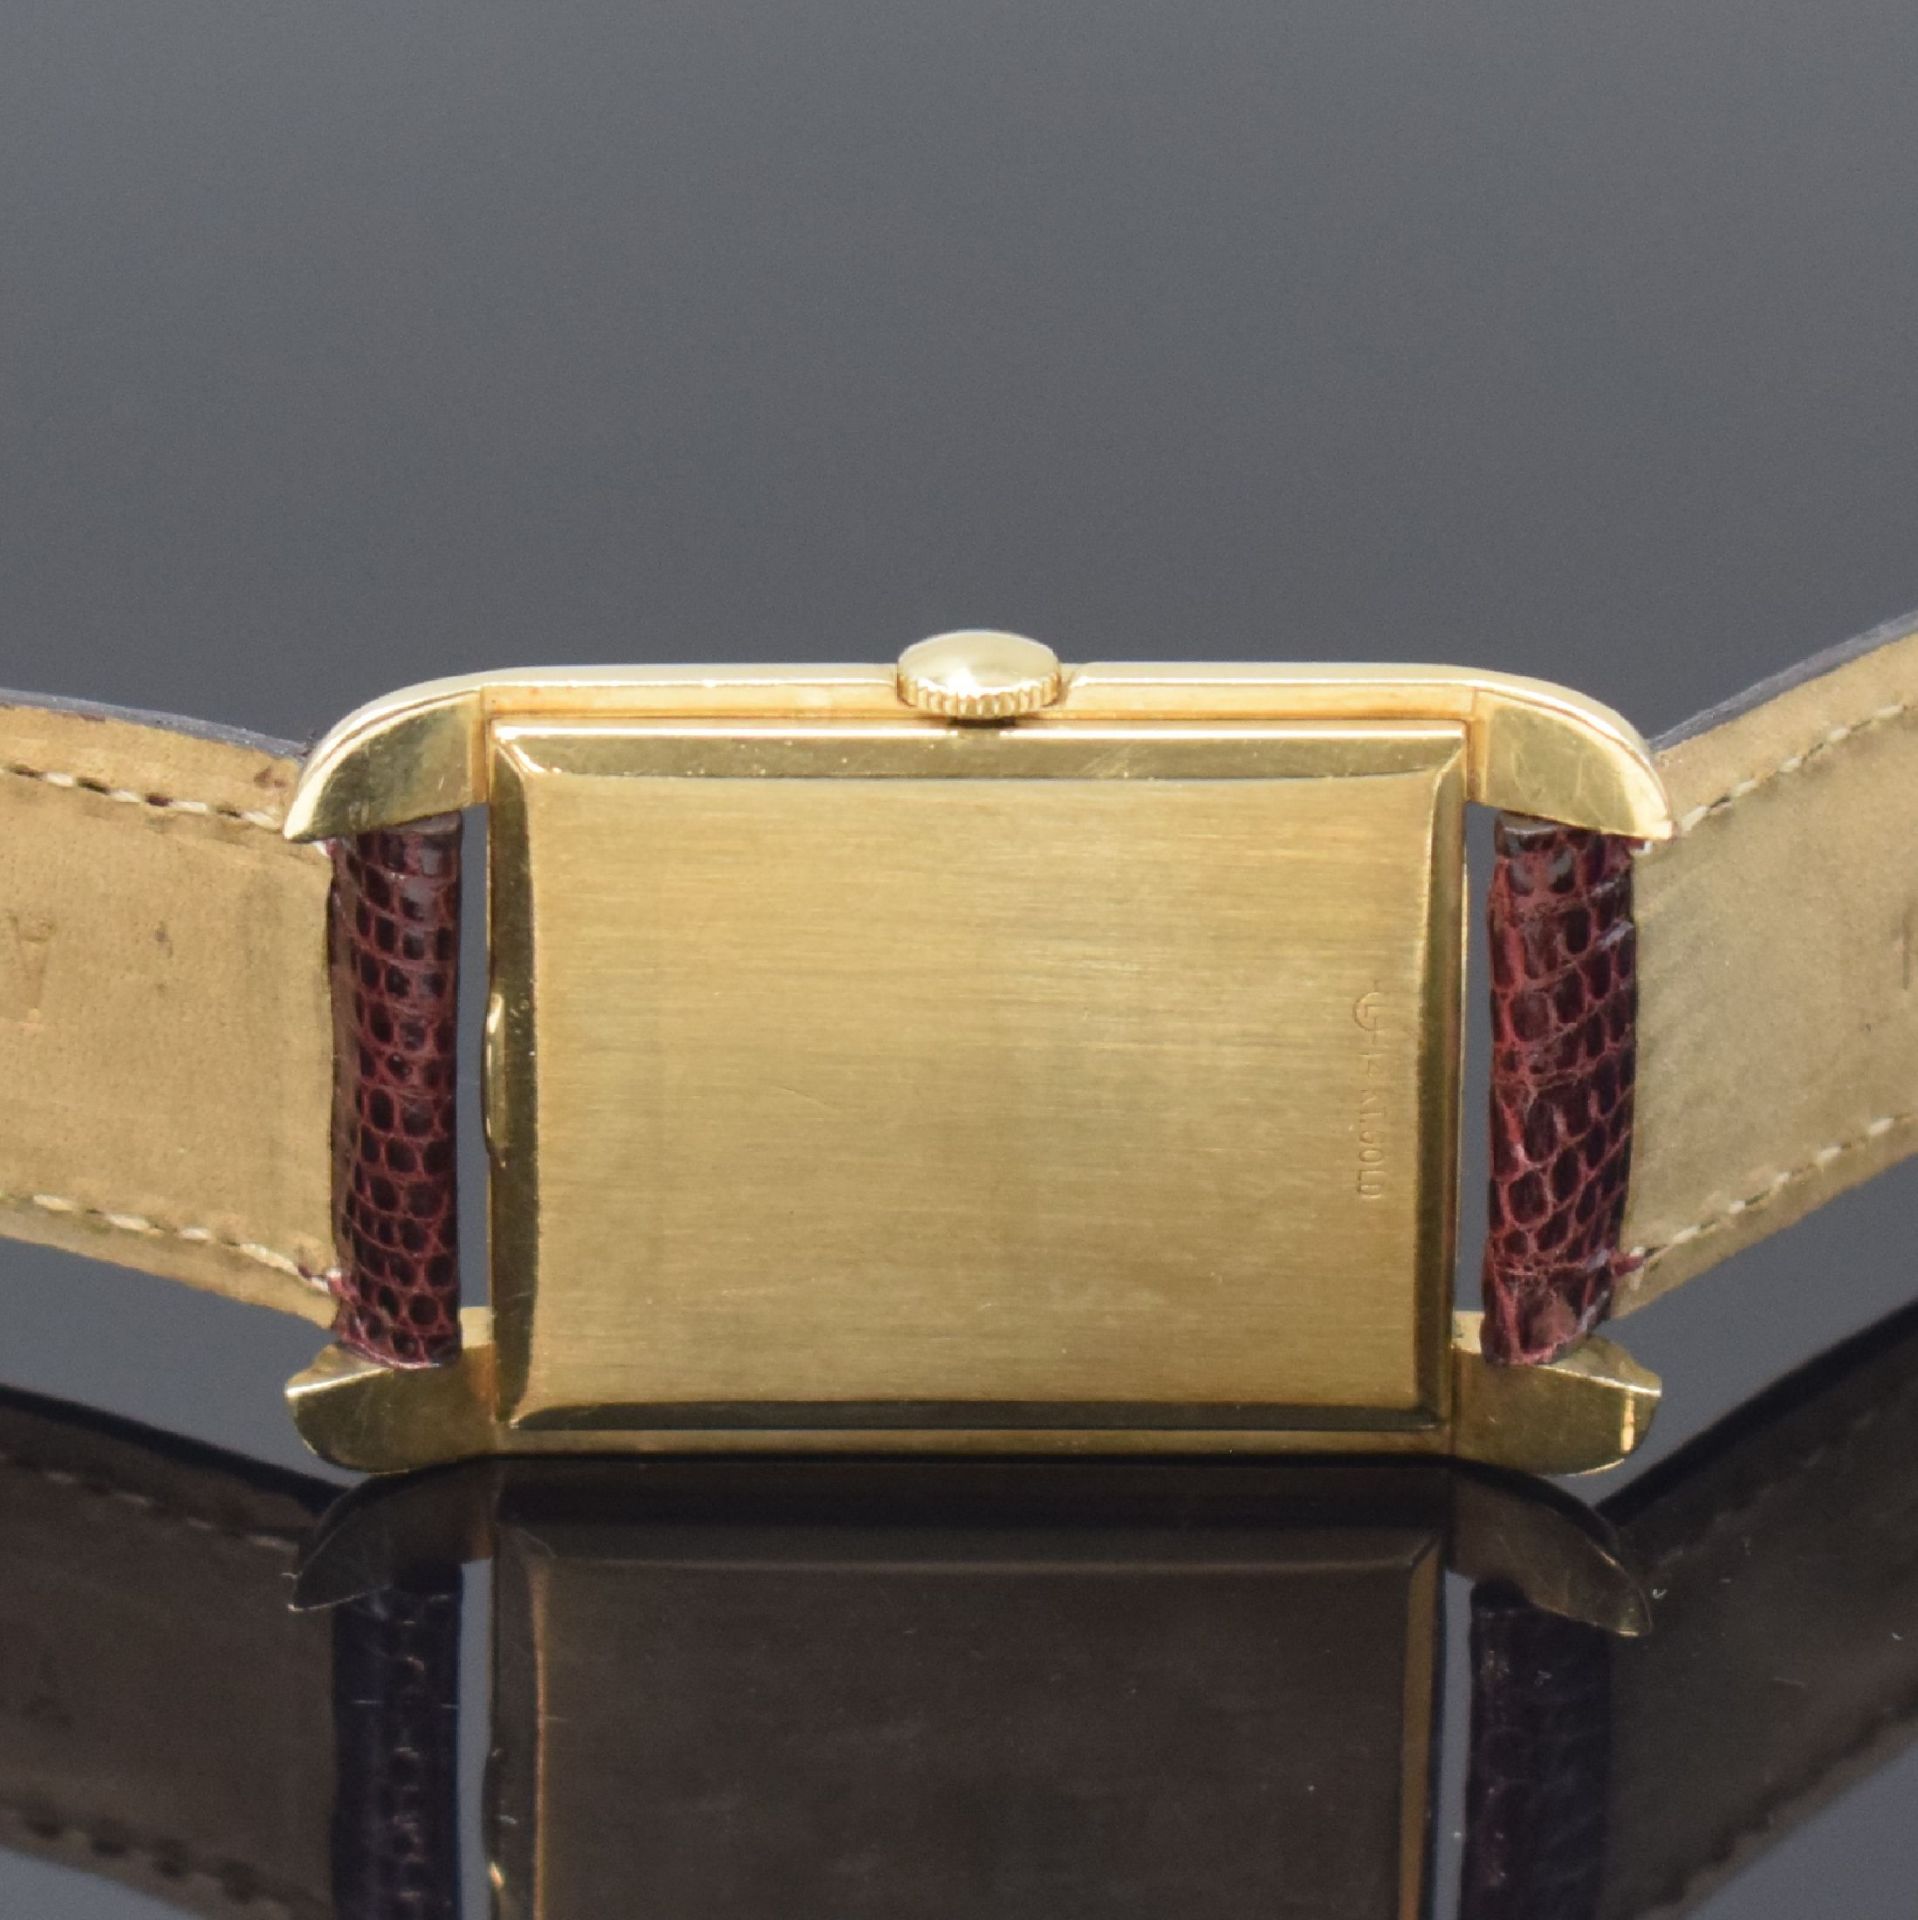 Le COULTRE rechteckige Armbanduhr in 14k goldfilled, - Image 4 of 6